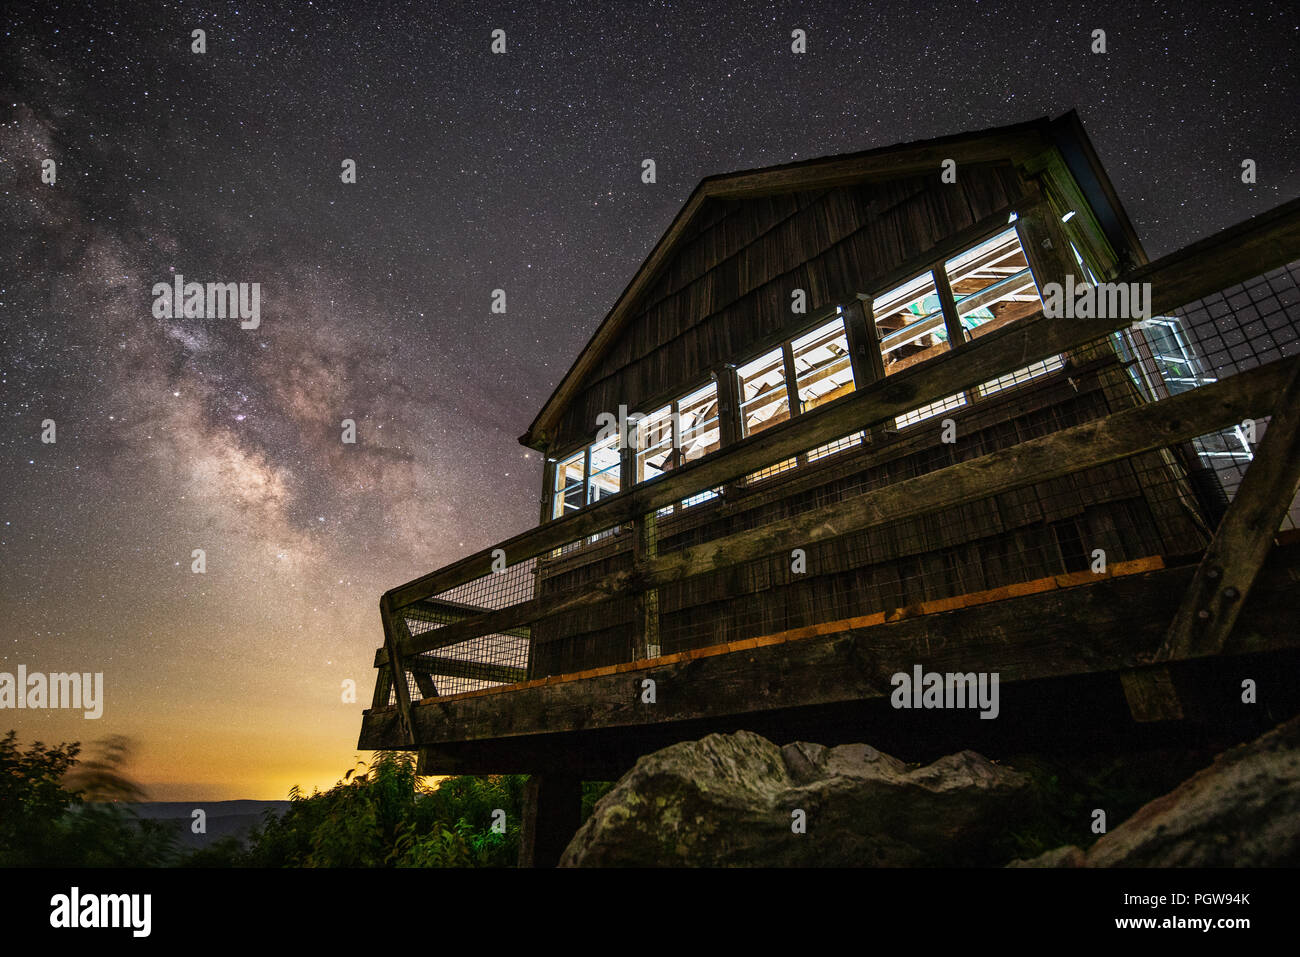 Haut au-dessus des bas niveaux de pollution lumineuse dans les montagnes du sud de la Virginie de l'Ouest, la Voie Lactée peut être vu clairement et lumineux sur les nuits d'été Banque D'Images